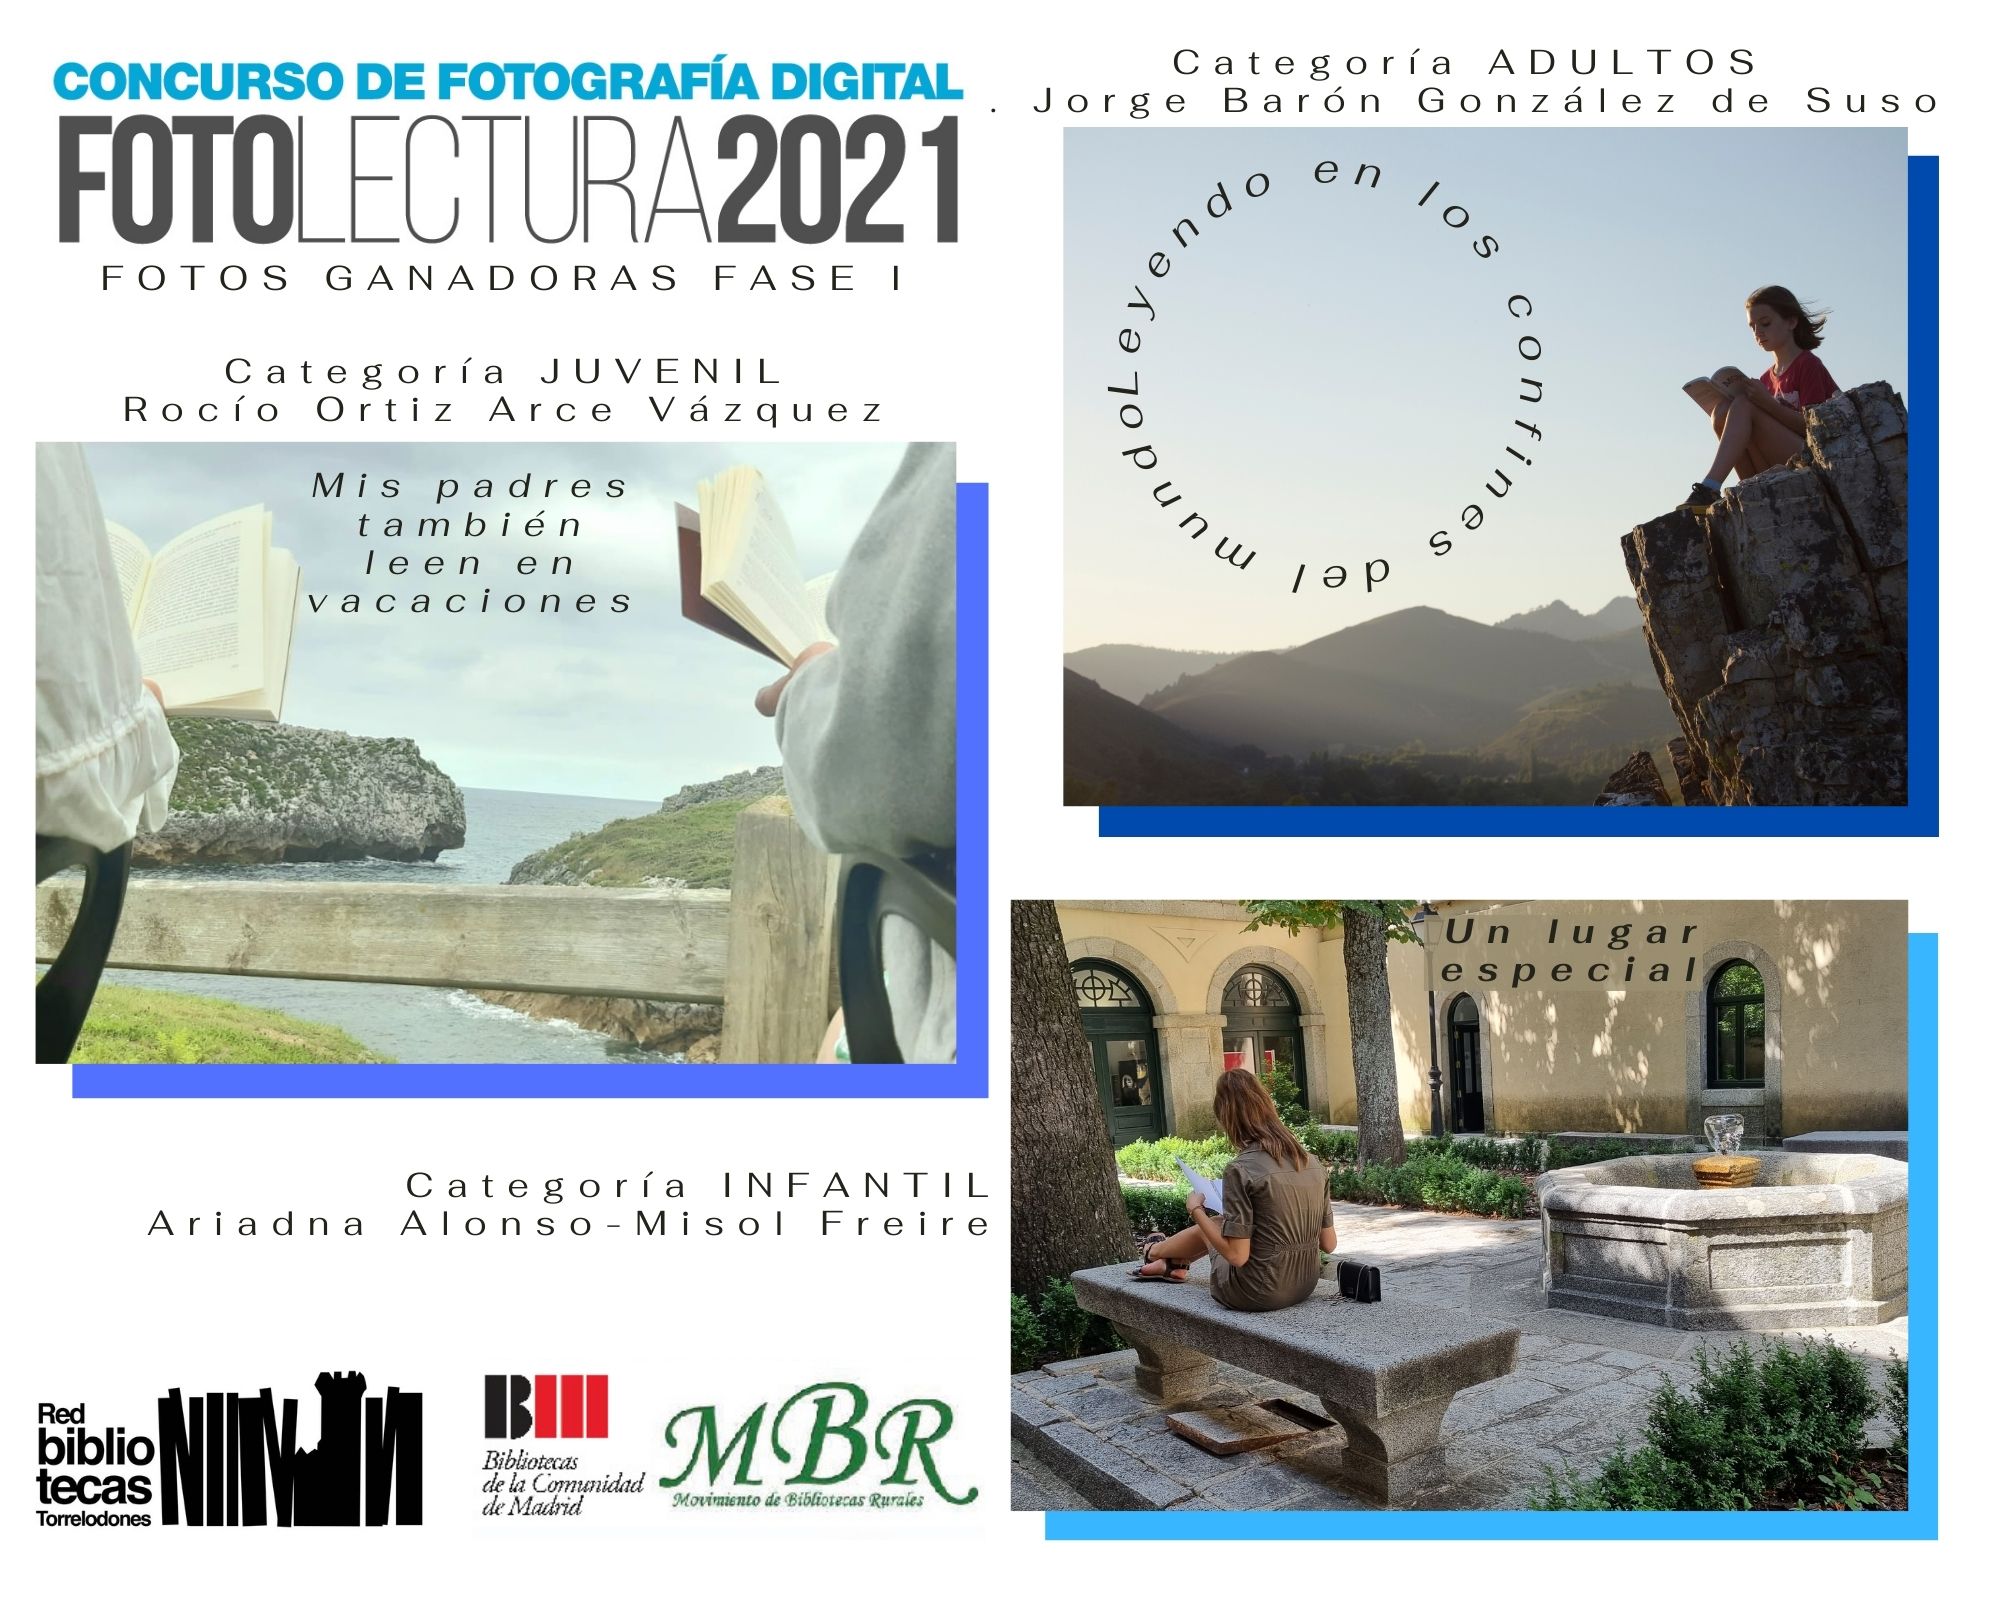 Fotos ganadoras concurso Fotolectura 2021 en Torrelodones